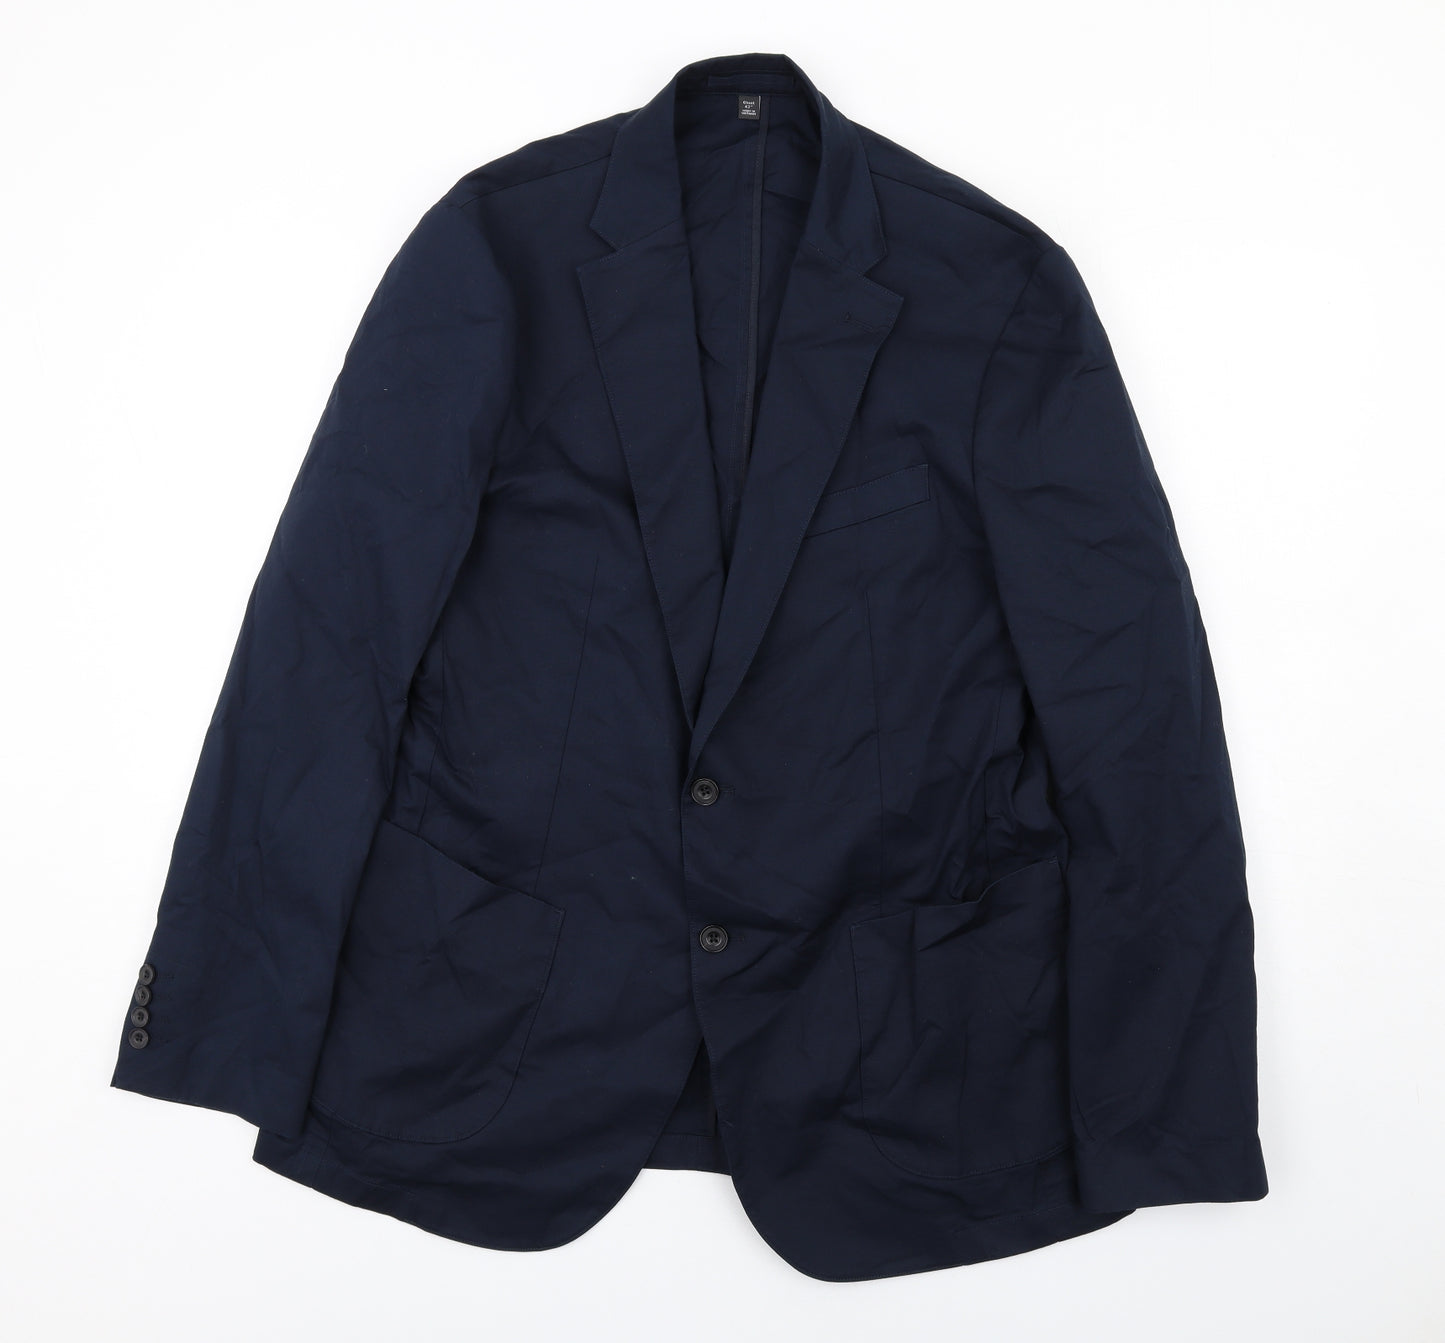 Marks and Spencer Mens Blue Cotton Jacket Suit Jacket Size 42 Regular